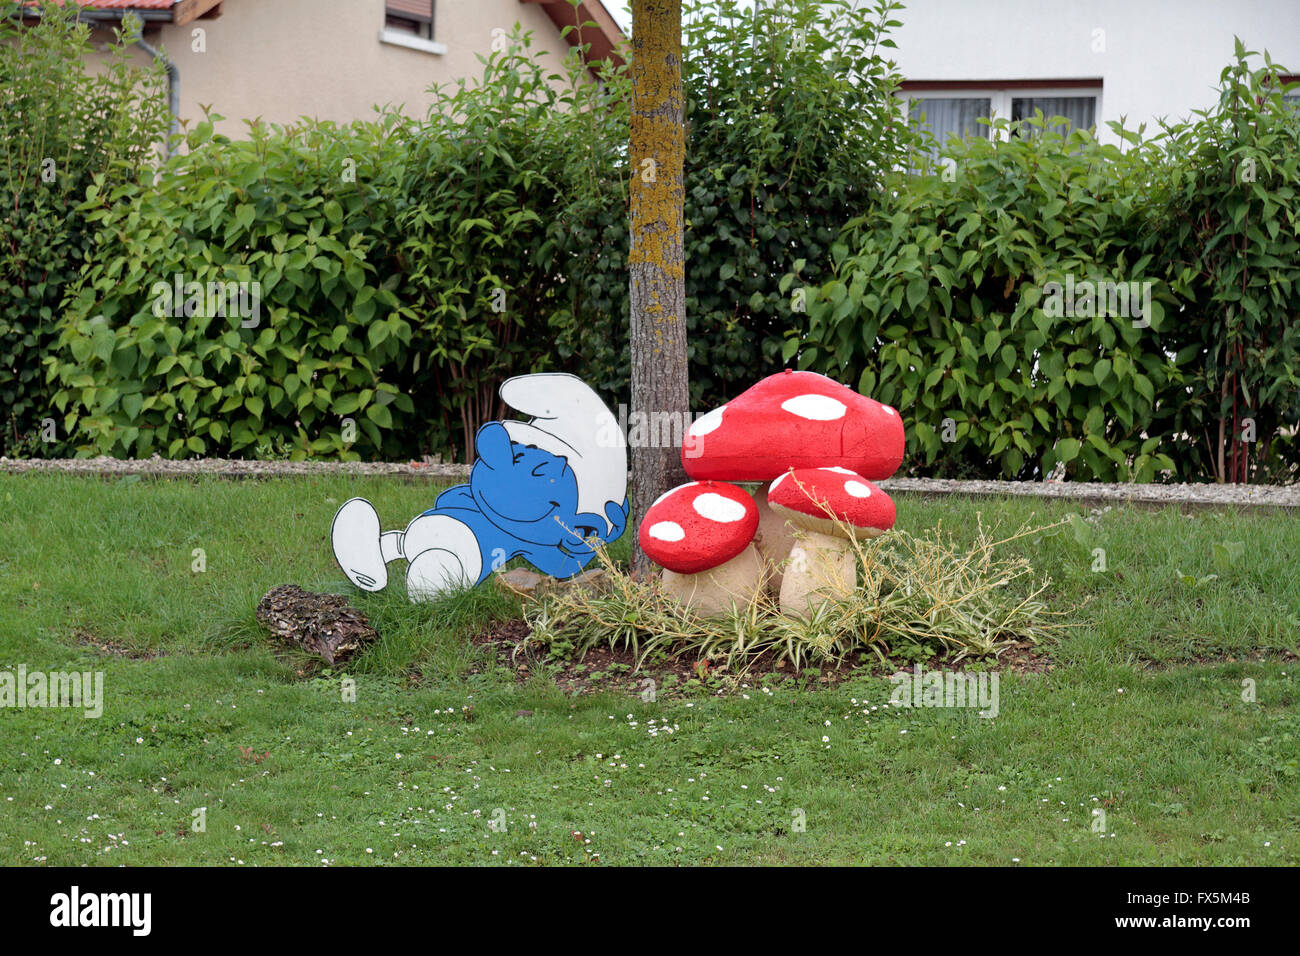 Comic-Figur (Smurf und Pilz) inspiriert Gartenmöbel in einem kleinen Dorf in der Nähe von Verdun in Frankreich. Stockfoto